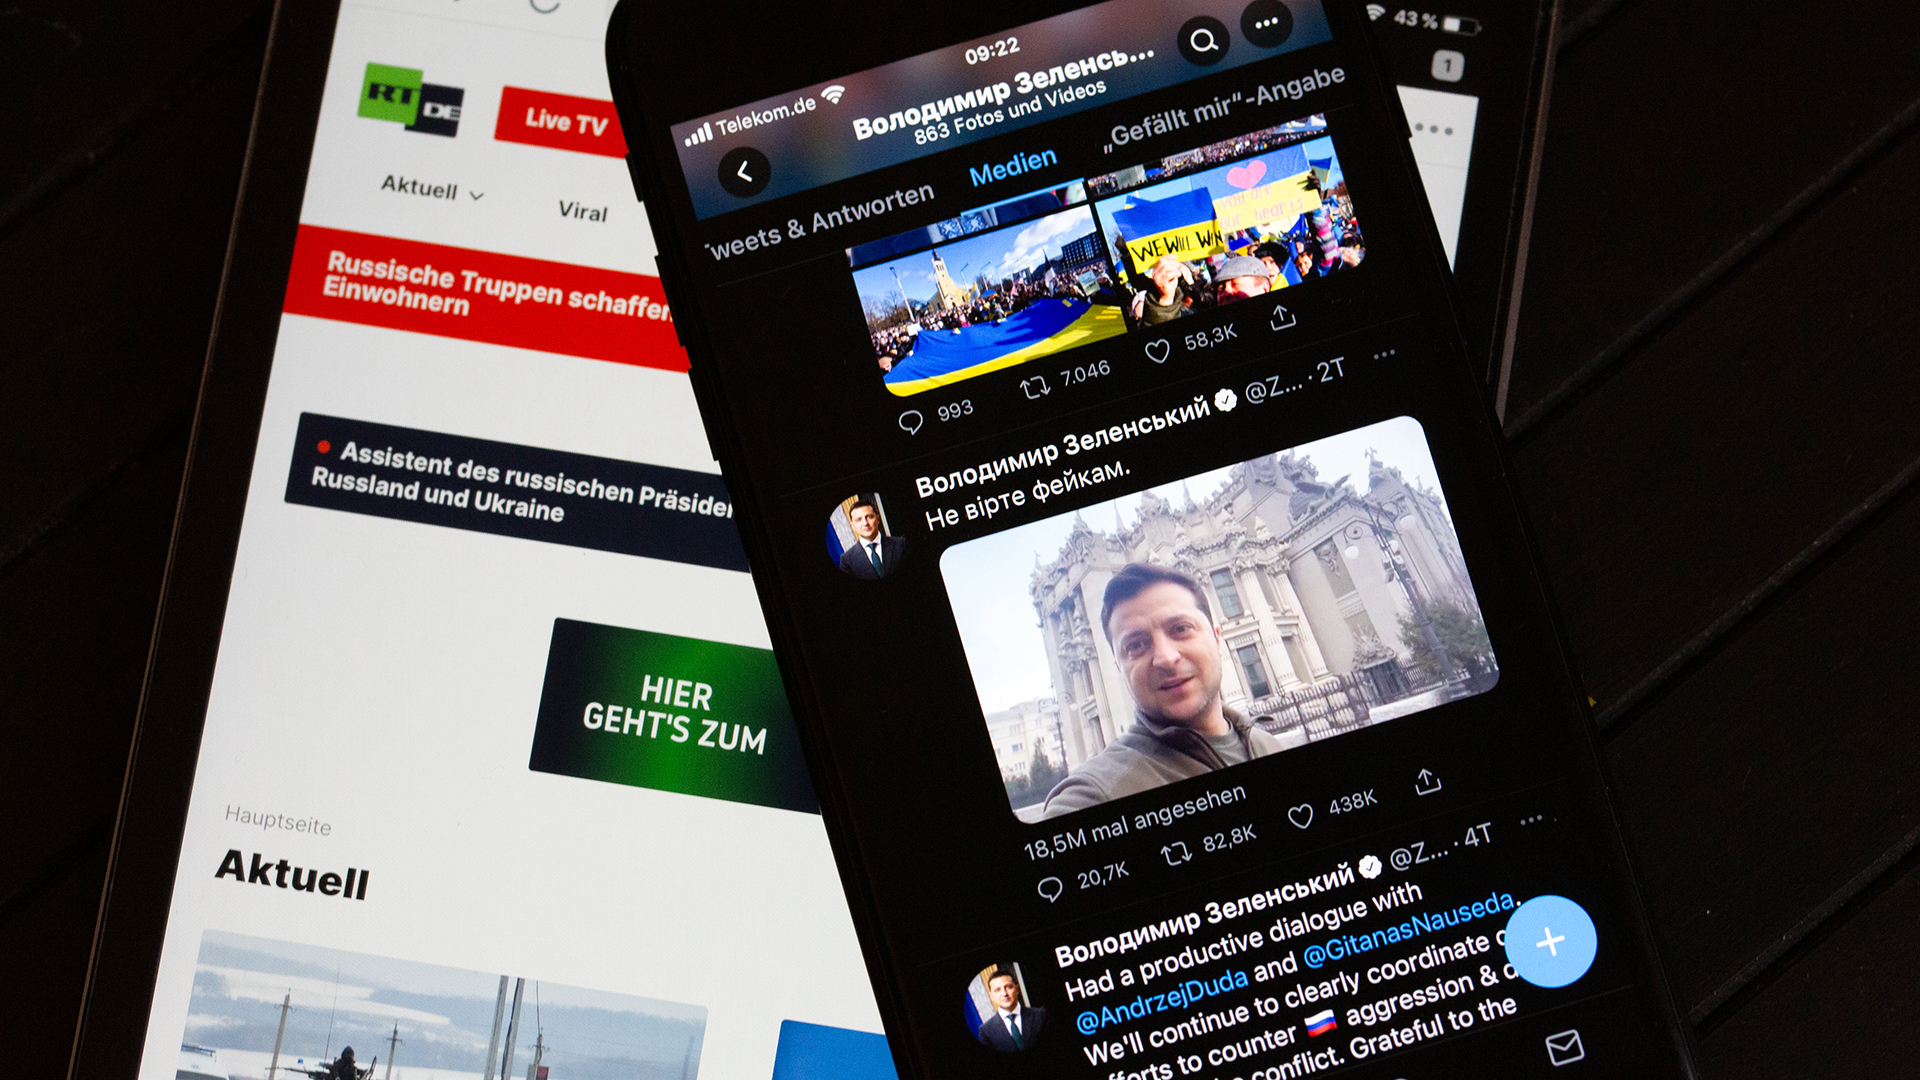 Die Webseite des russischen Fernsehsenders RT auf einem Tablet und der Twitter-Account von Selenskyj auf einem Smartphone. | picture alliance/dpa/dpa-Zentral